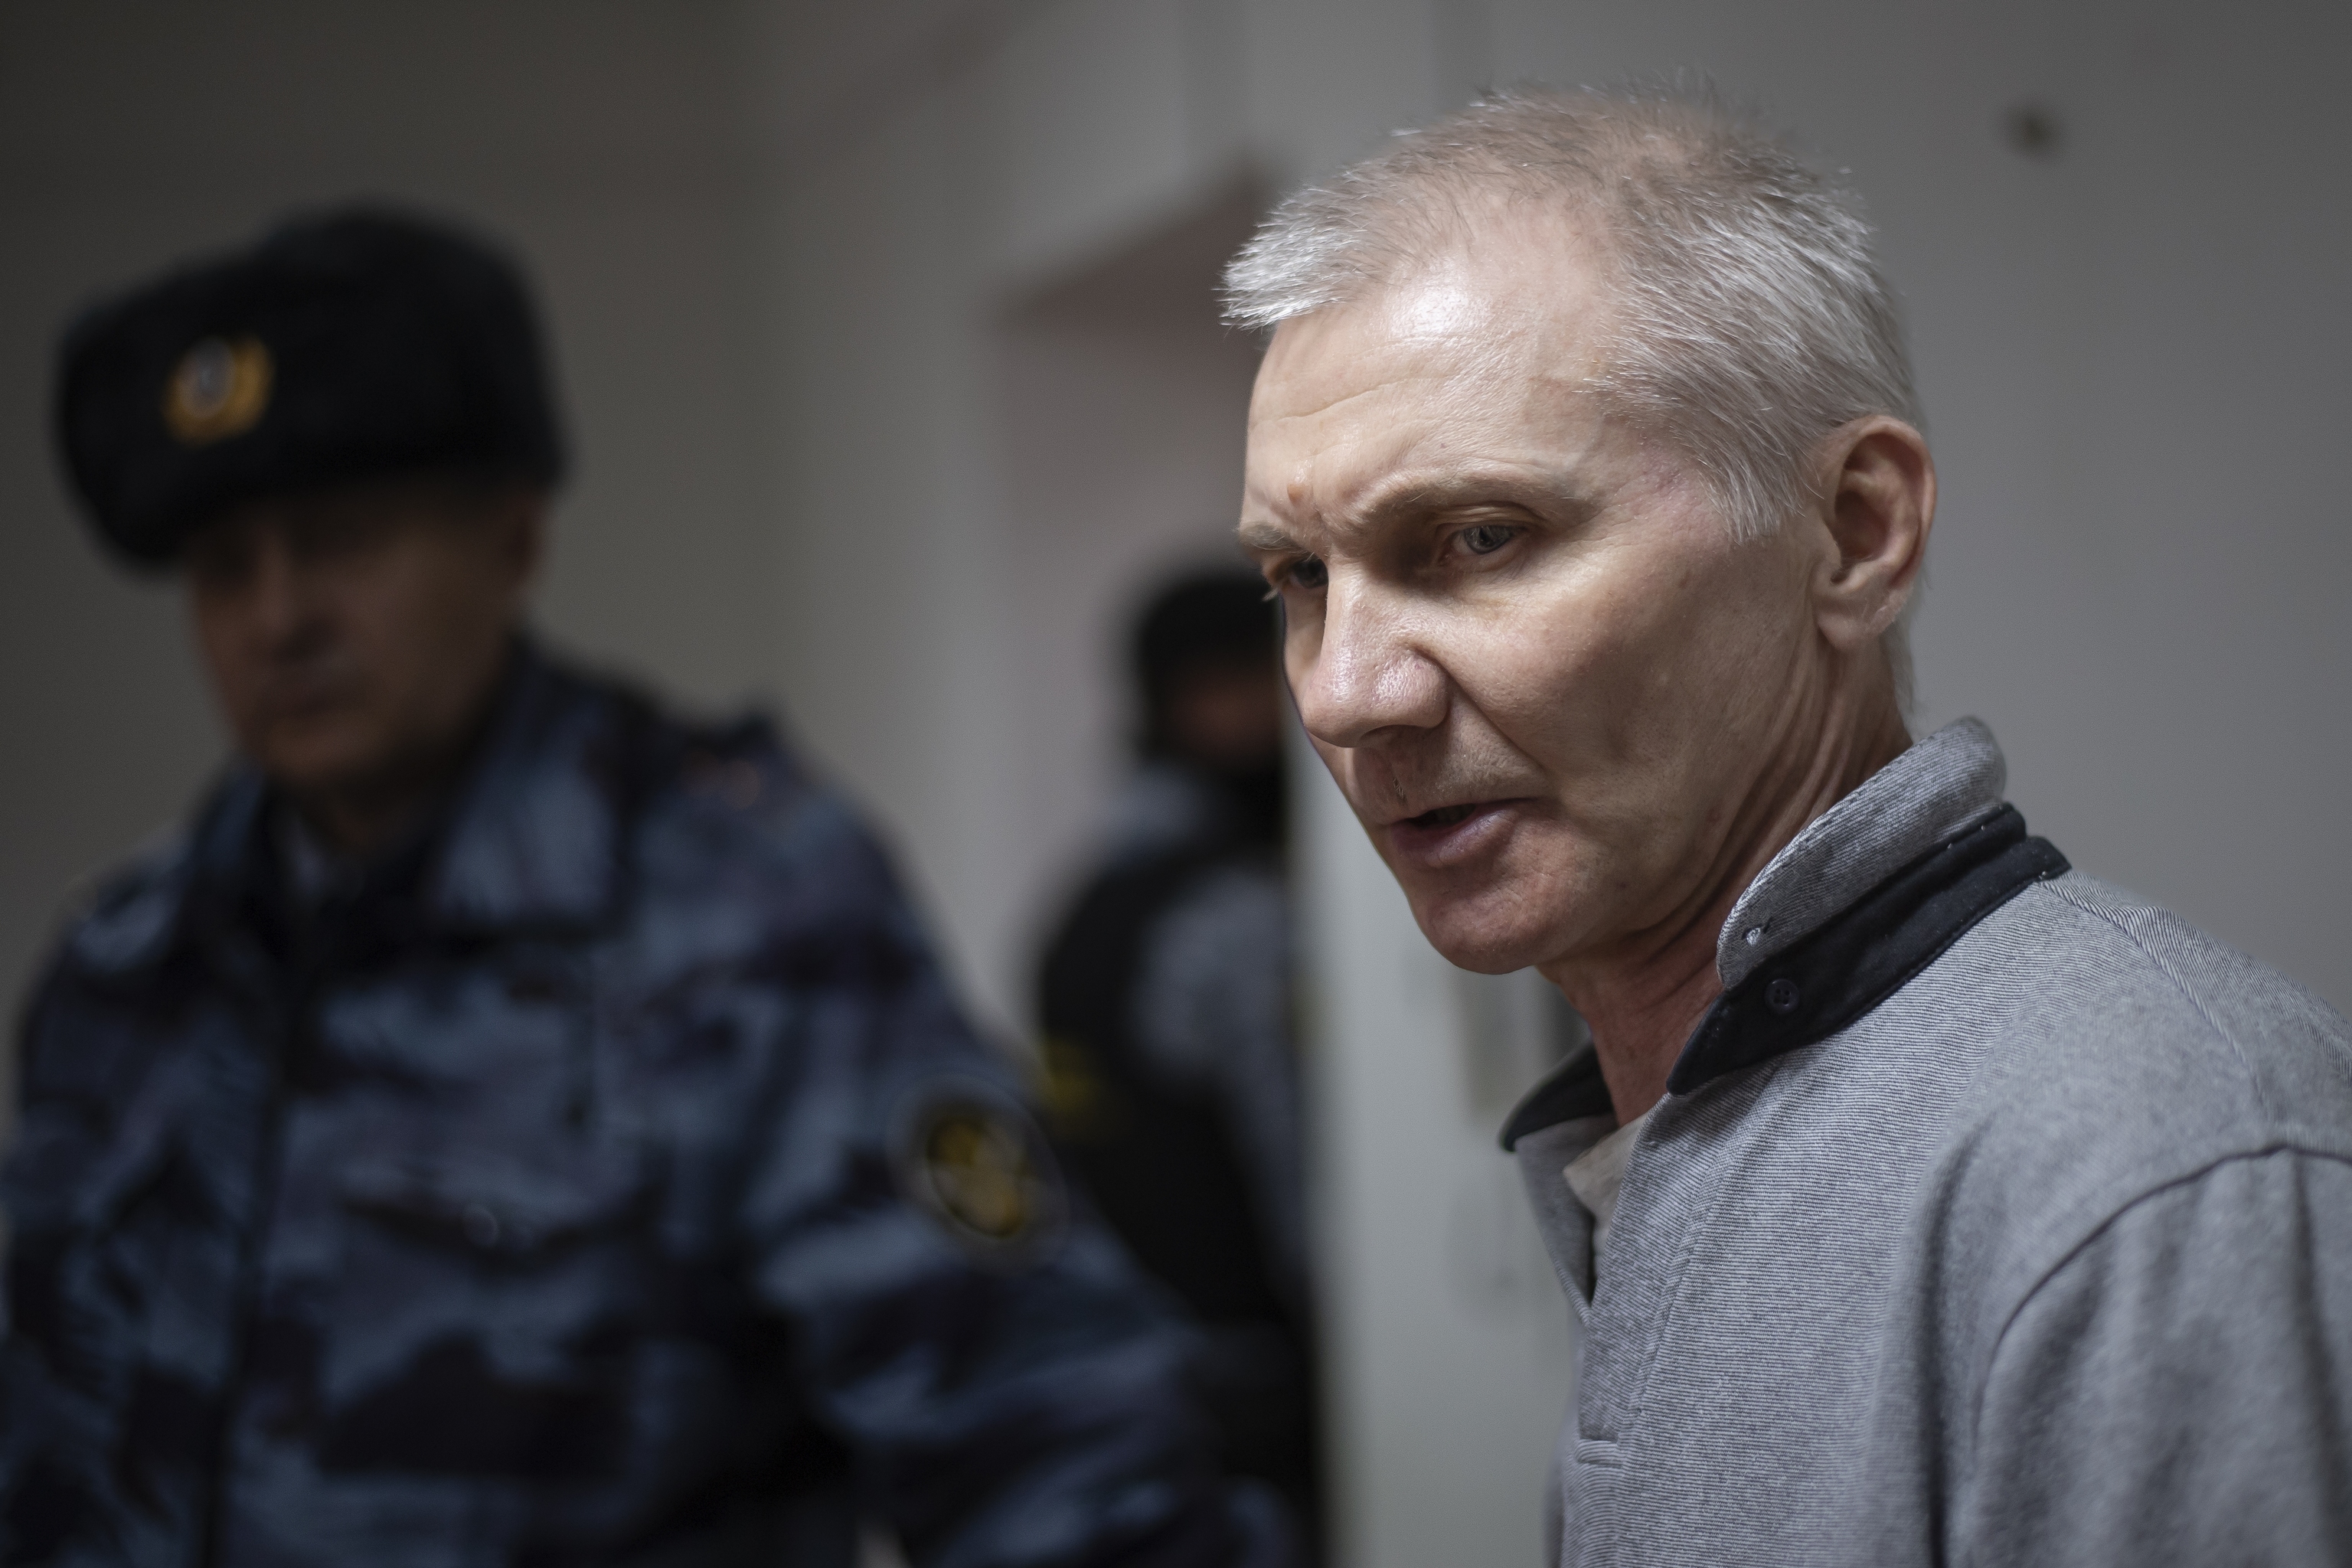 El KGB detiene al padre ruso que se fugó tras ser condenado por un dibujo pacifista de su hija